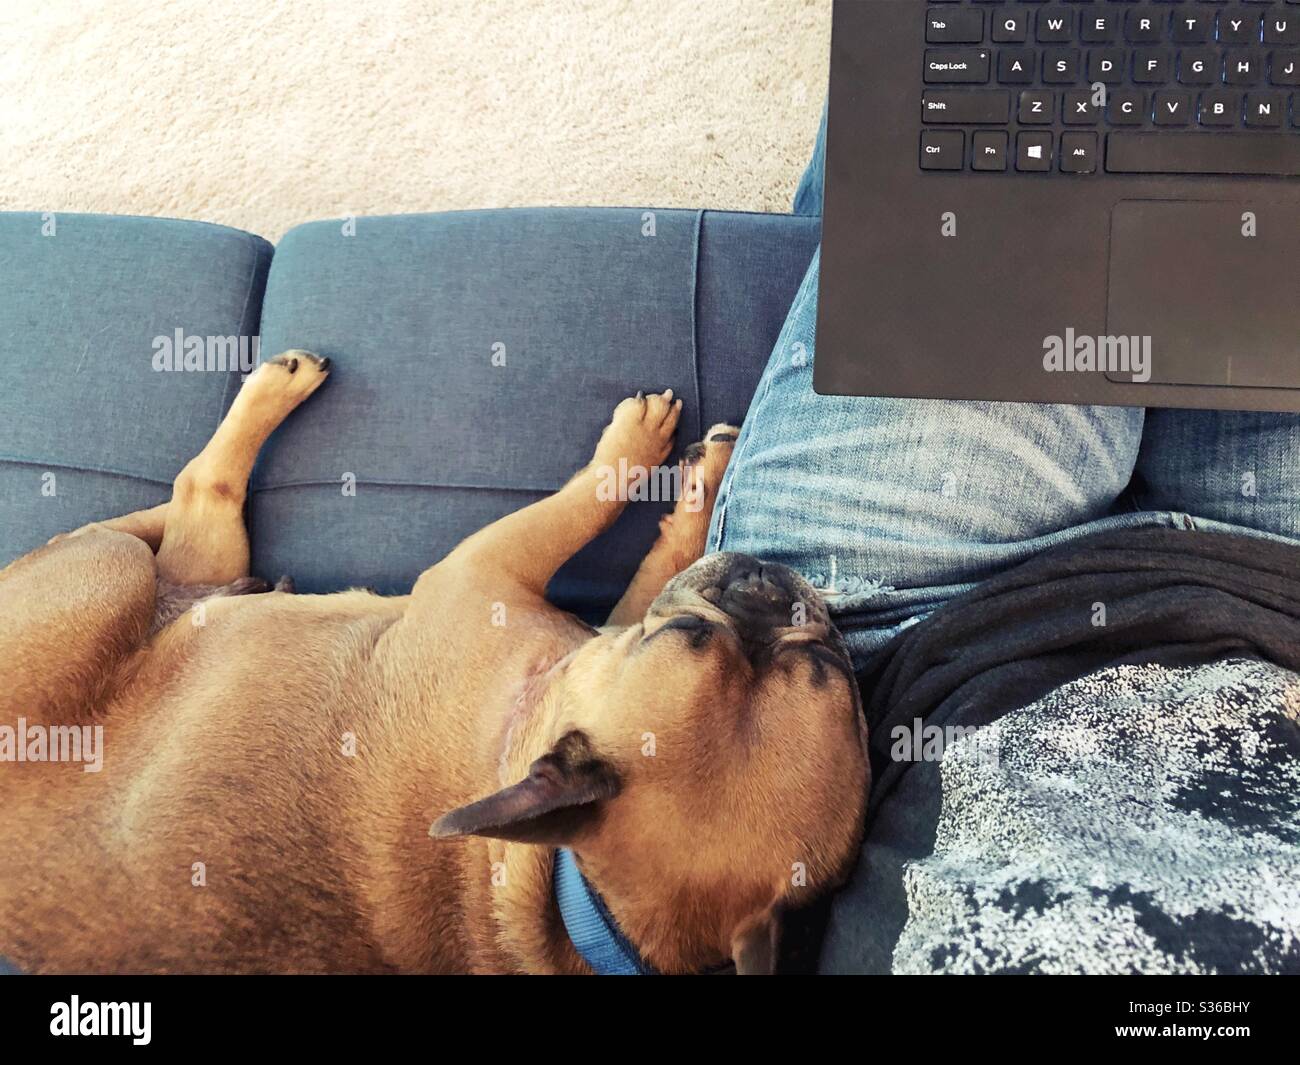 Un chien de taureau français endormi se détend sur la jambe d'une personne qui travaille sur un ordinateur portable. Banque D'Images